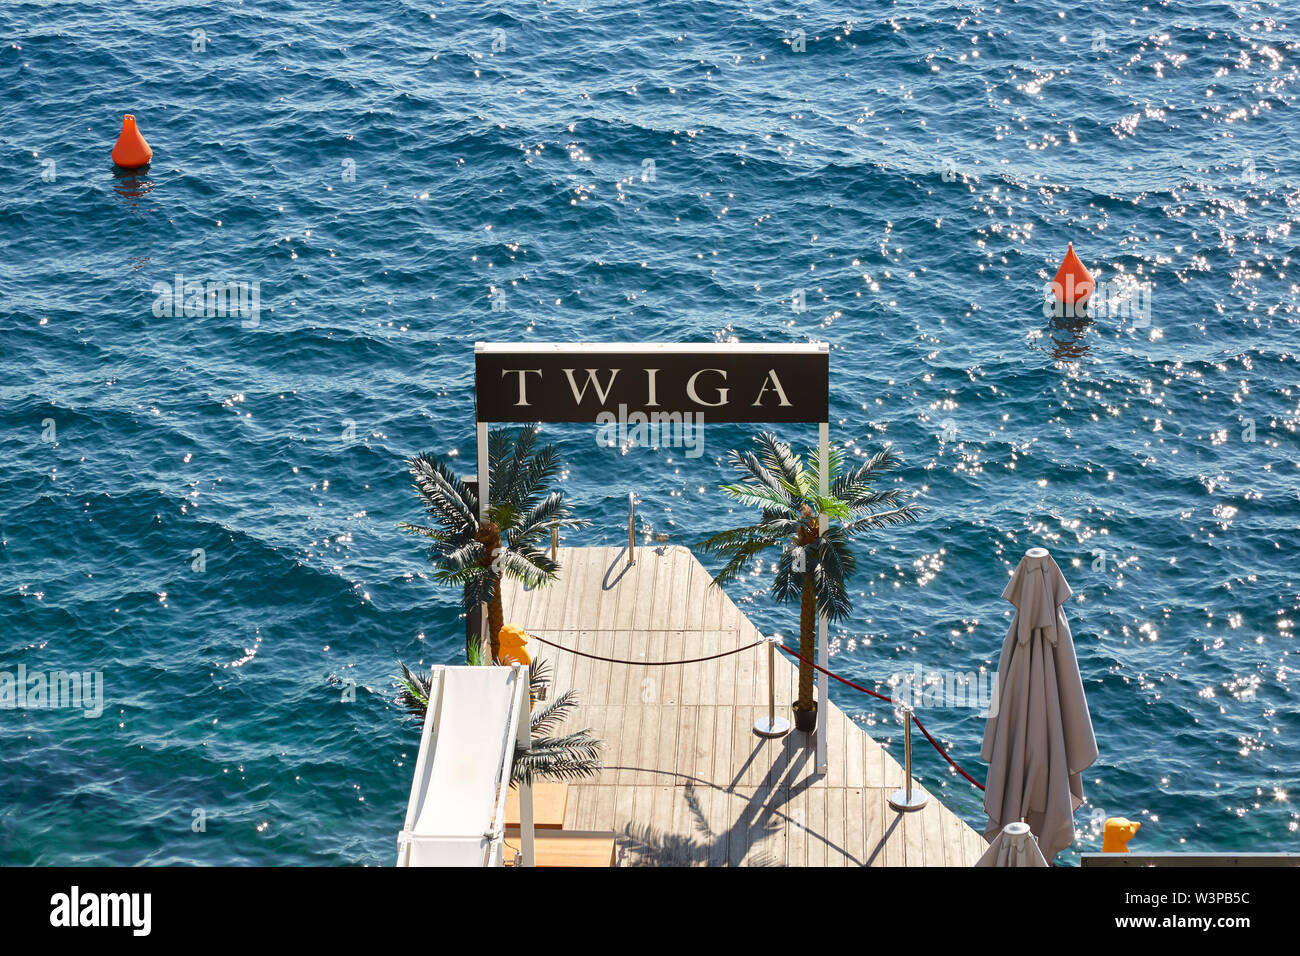 MONTE CARLO, MONACO - AUGUST 21, 2016: Twiga lounge and shisha bar terrace on the sea in a sunny summer day in Monte Carlo, Monaco. Stock Photo